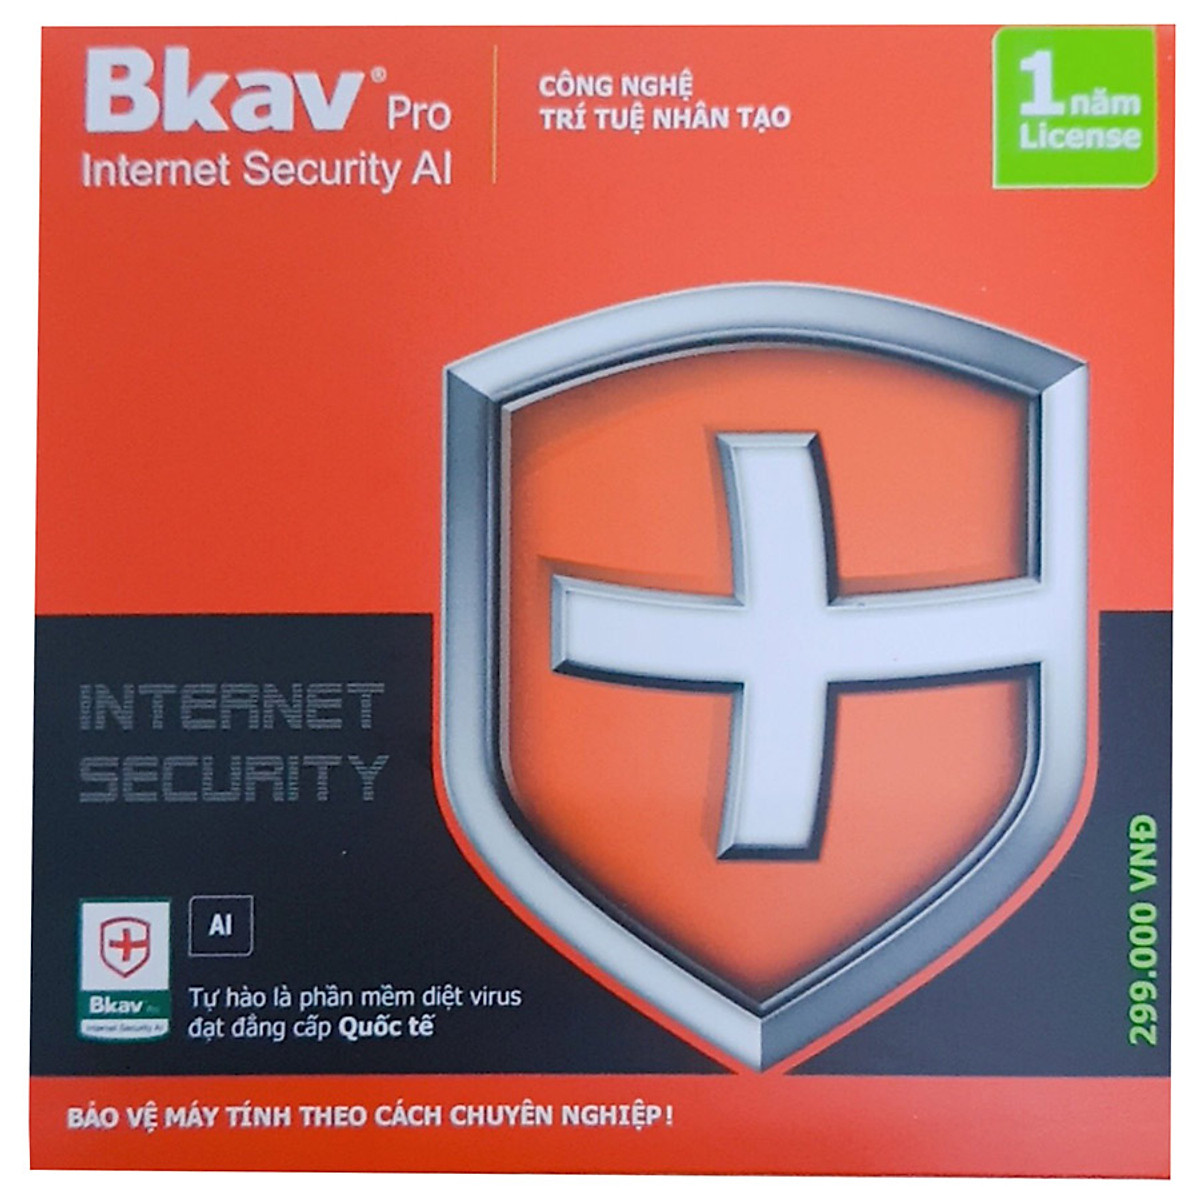 Phần Mềm Diệt Virus BKAV Profressional Internet Security (1 năm) - Hàng Chính Hãng